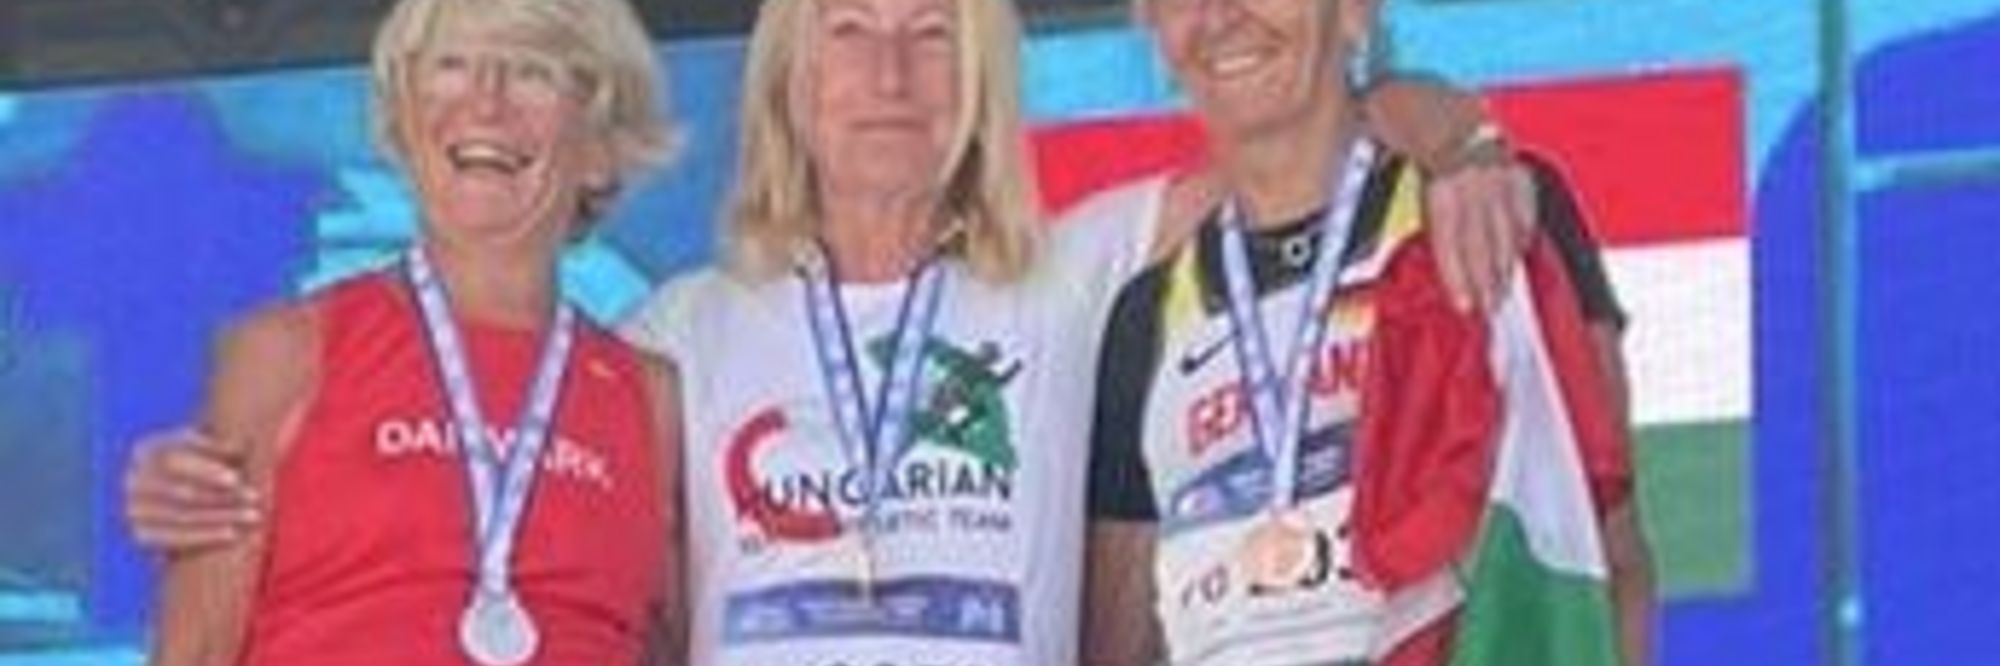 Monika Hedderich mit Bronze bei Senioren-WM